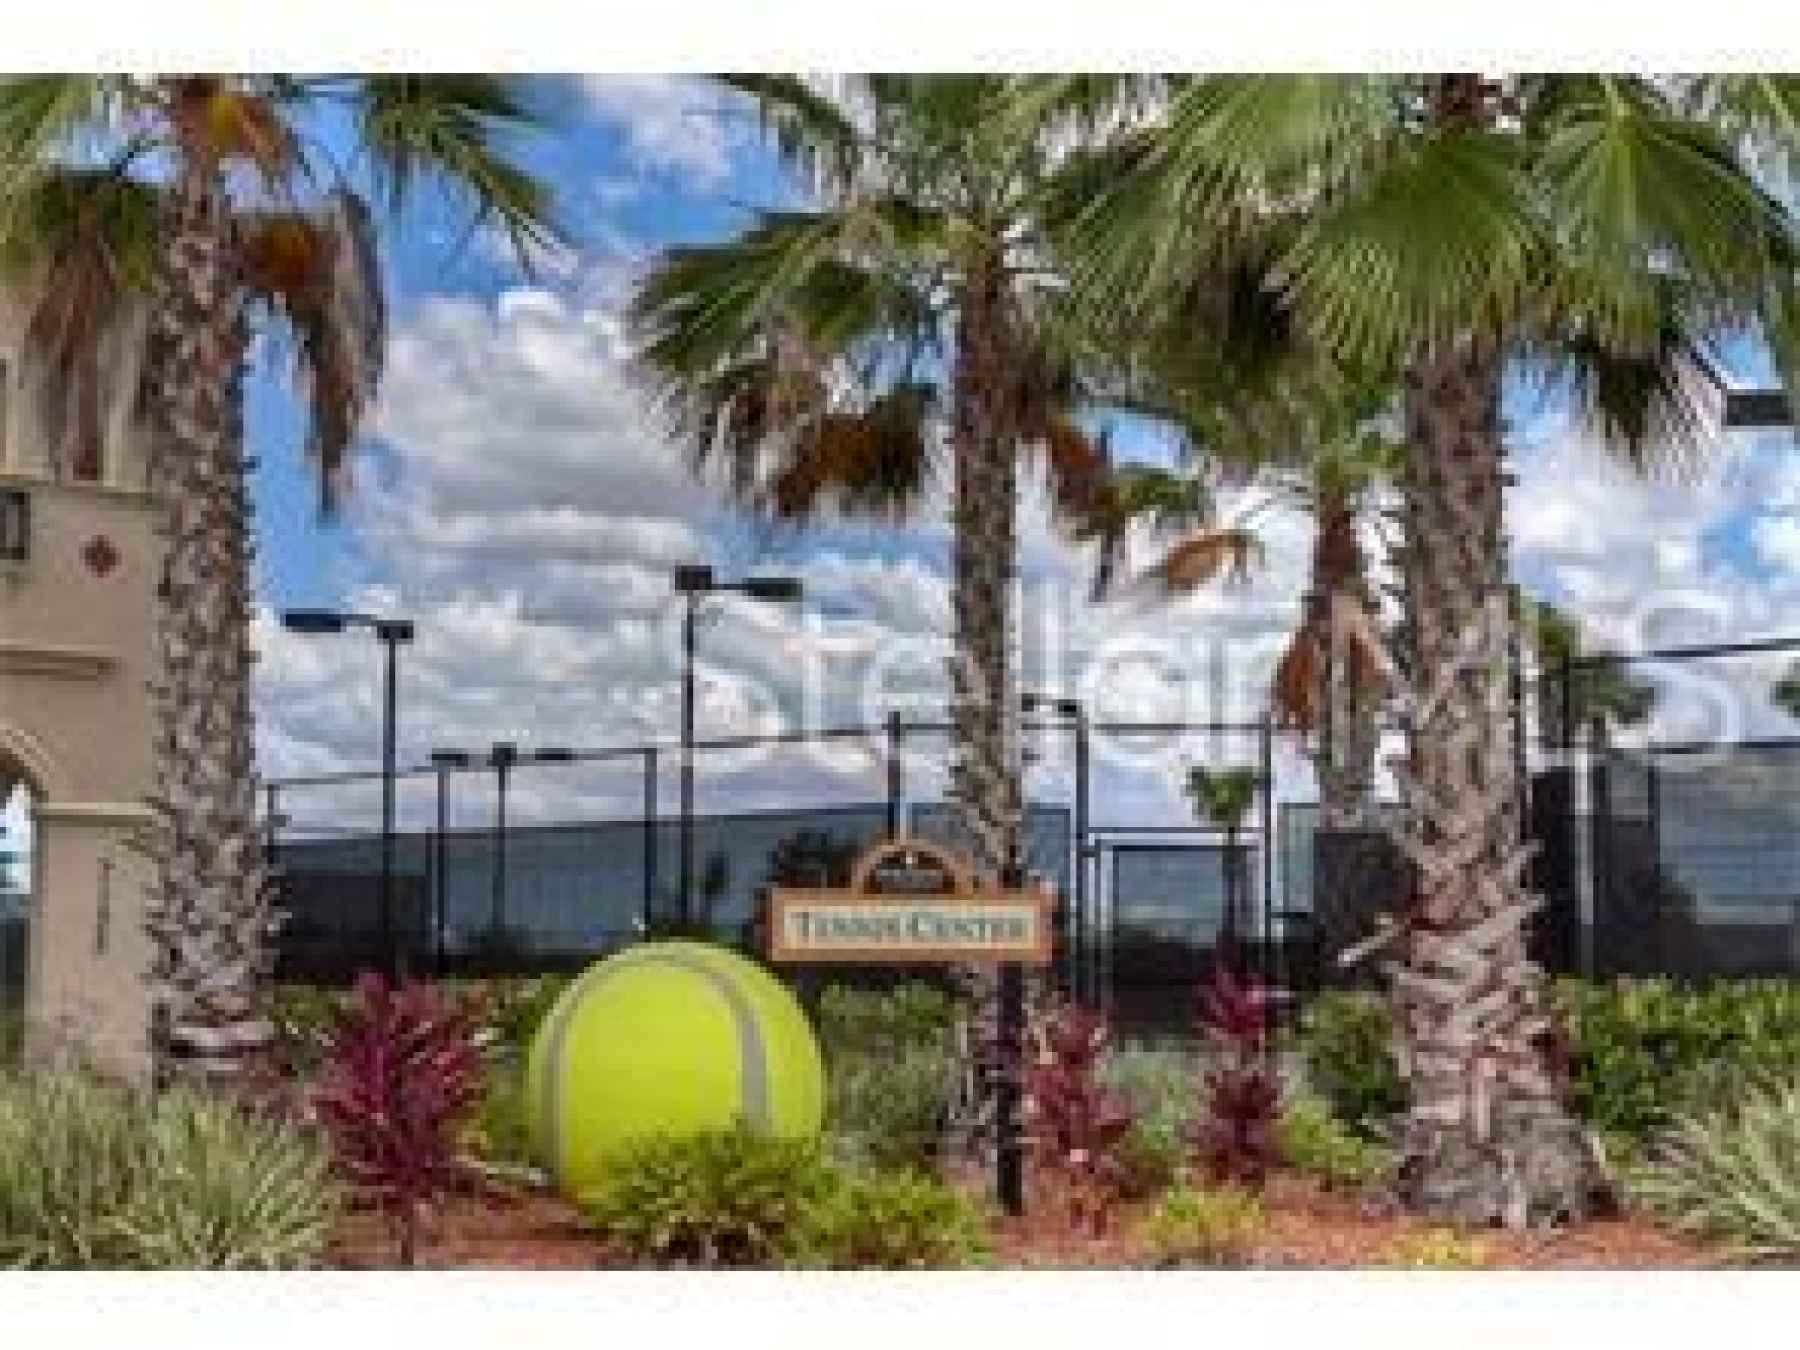 River Strand Tennis center